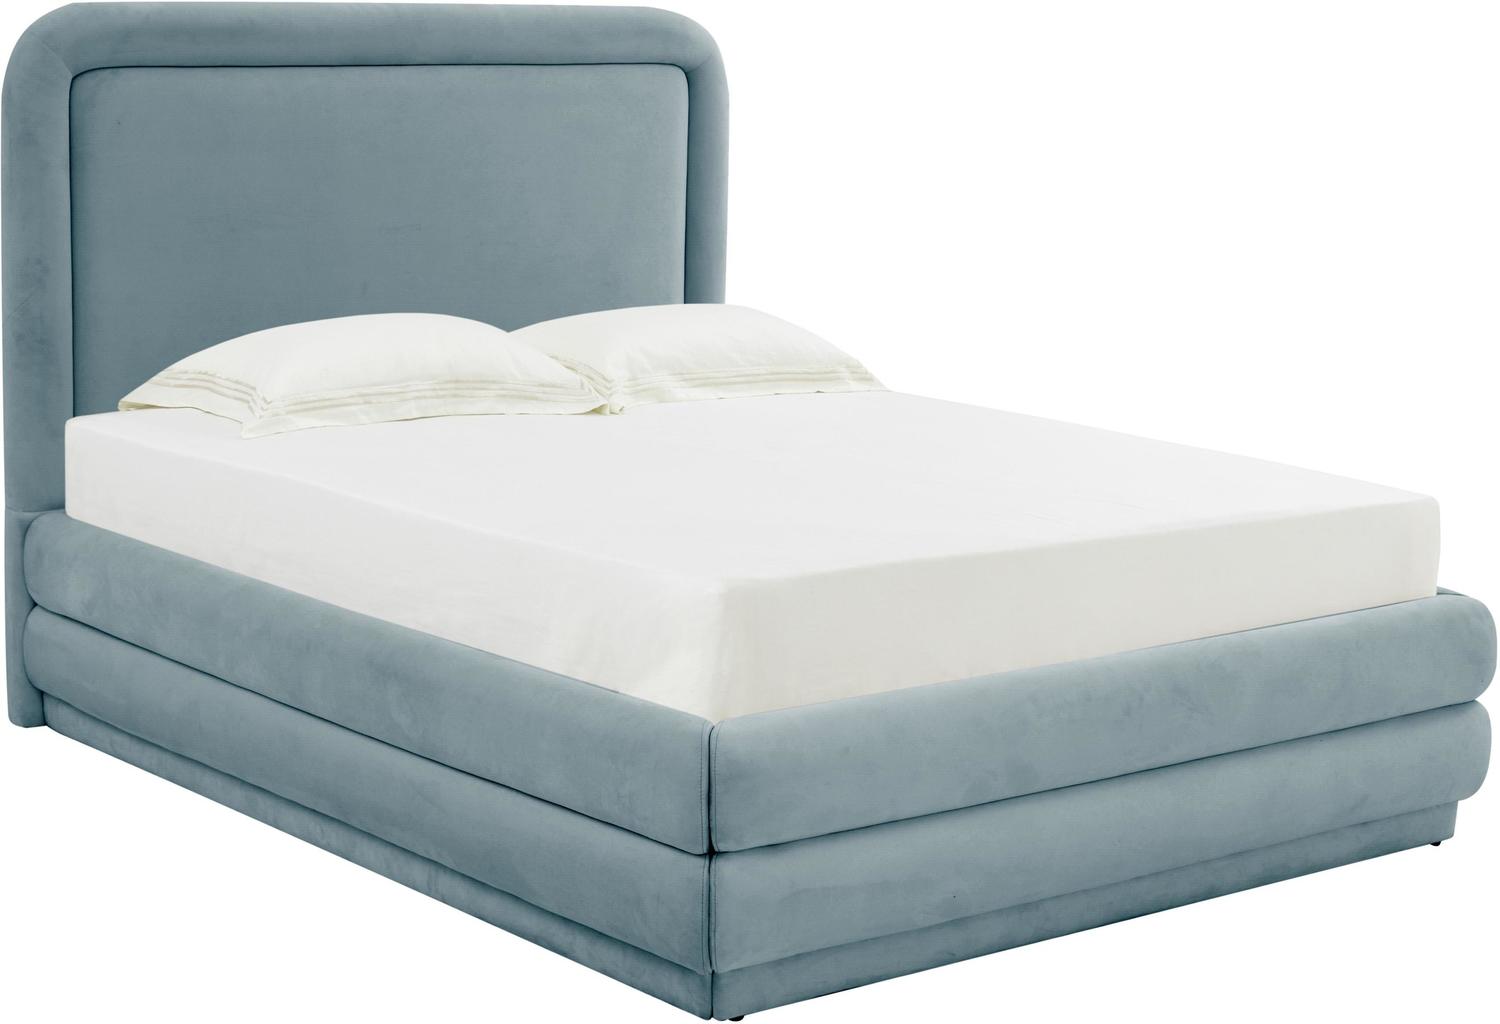 king size mattress for platform bed Tov Furniture Beds Bluestone